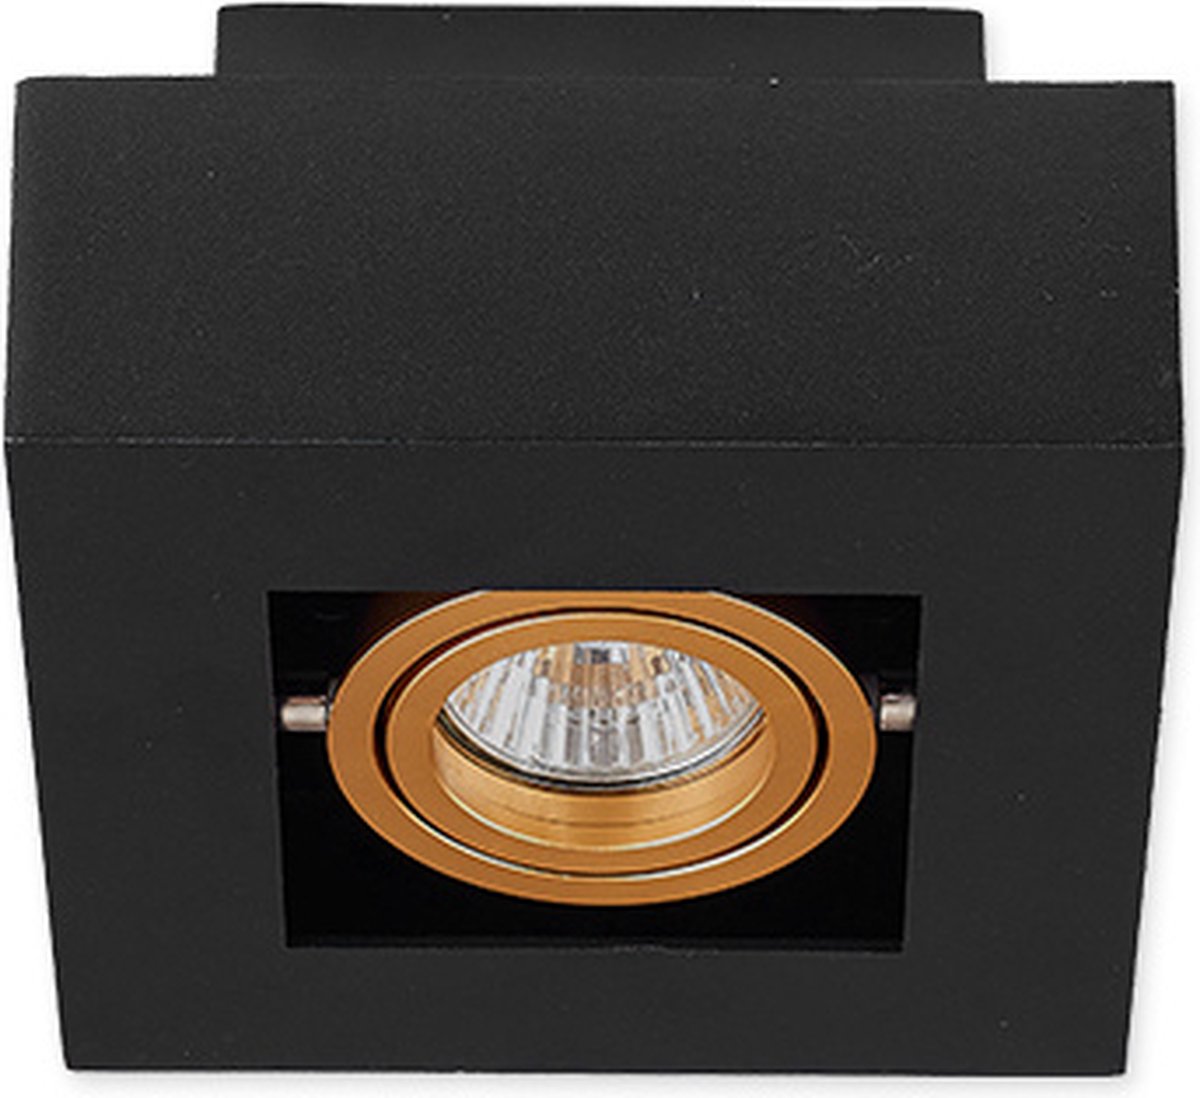 LvT - LED Plafondspot zwart goud - 1x GU10 fitting